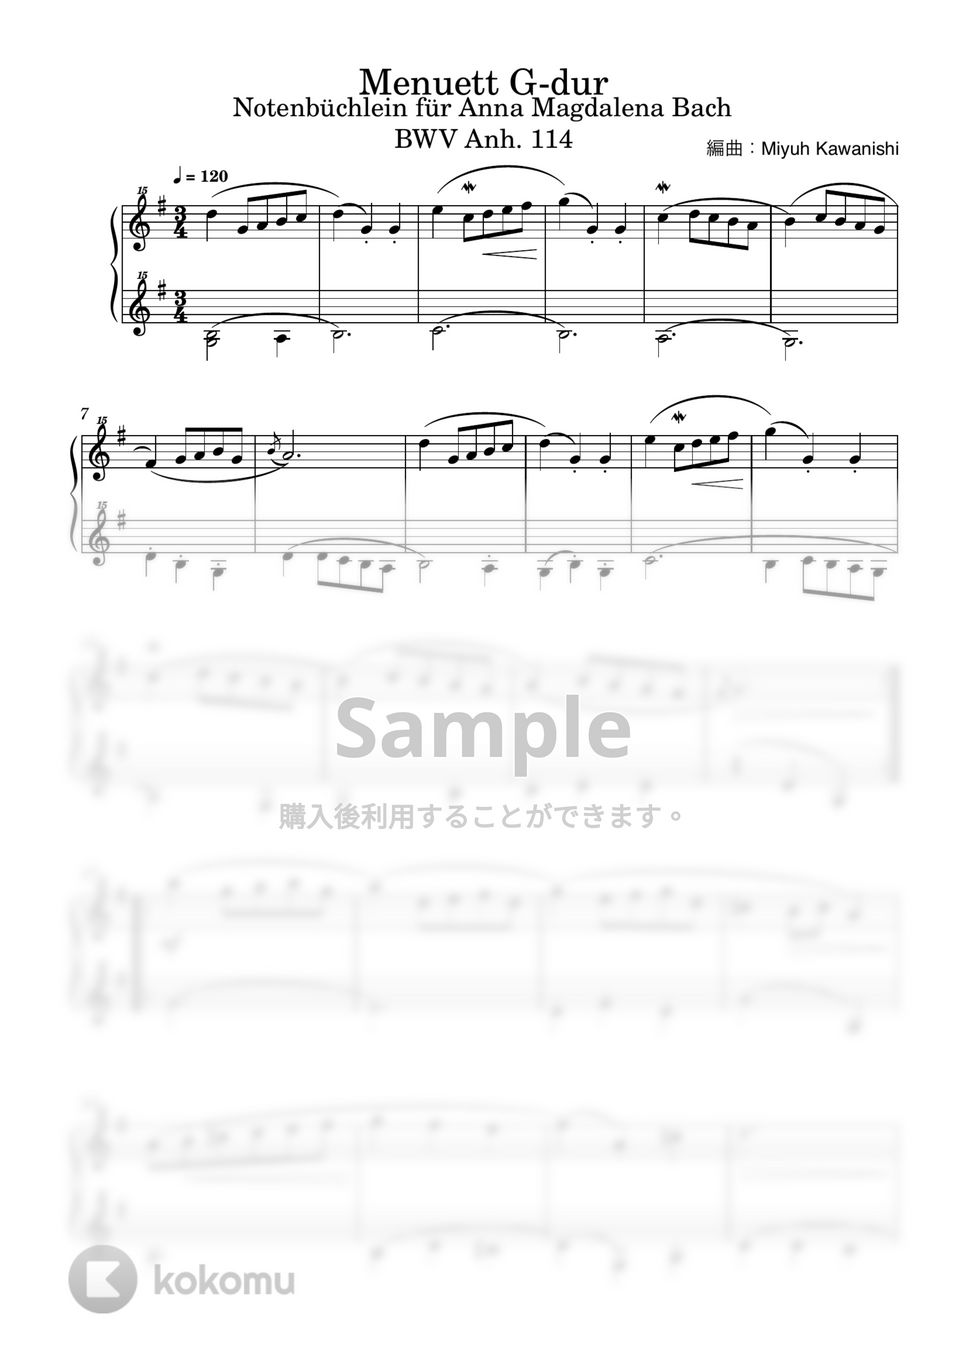 バッハ / クリスティアン・ペツォールト - メヌエット ト長調 BWV Anh.114 (トイピアノ / クラシック / 32鍵盤) by 川西三裕